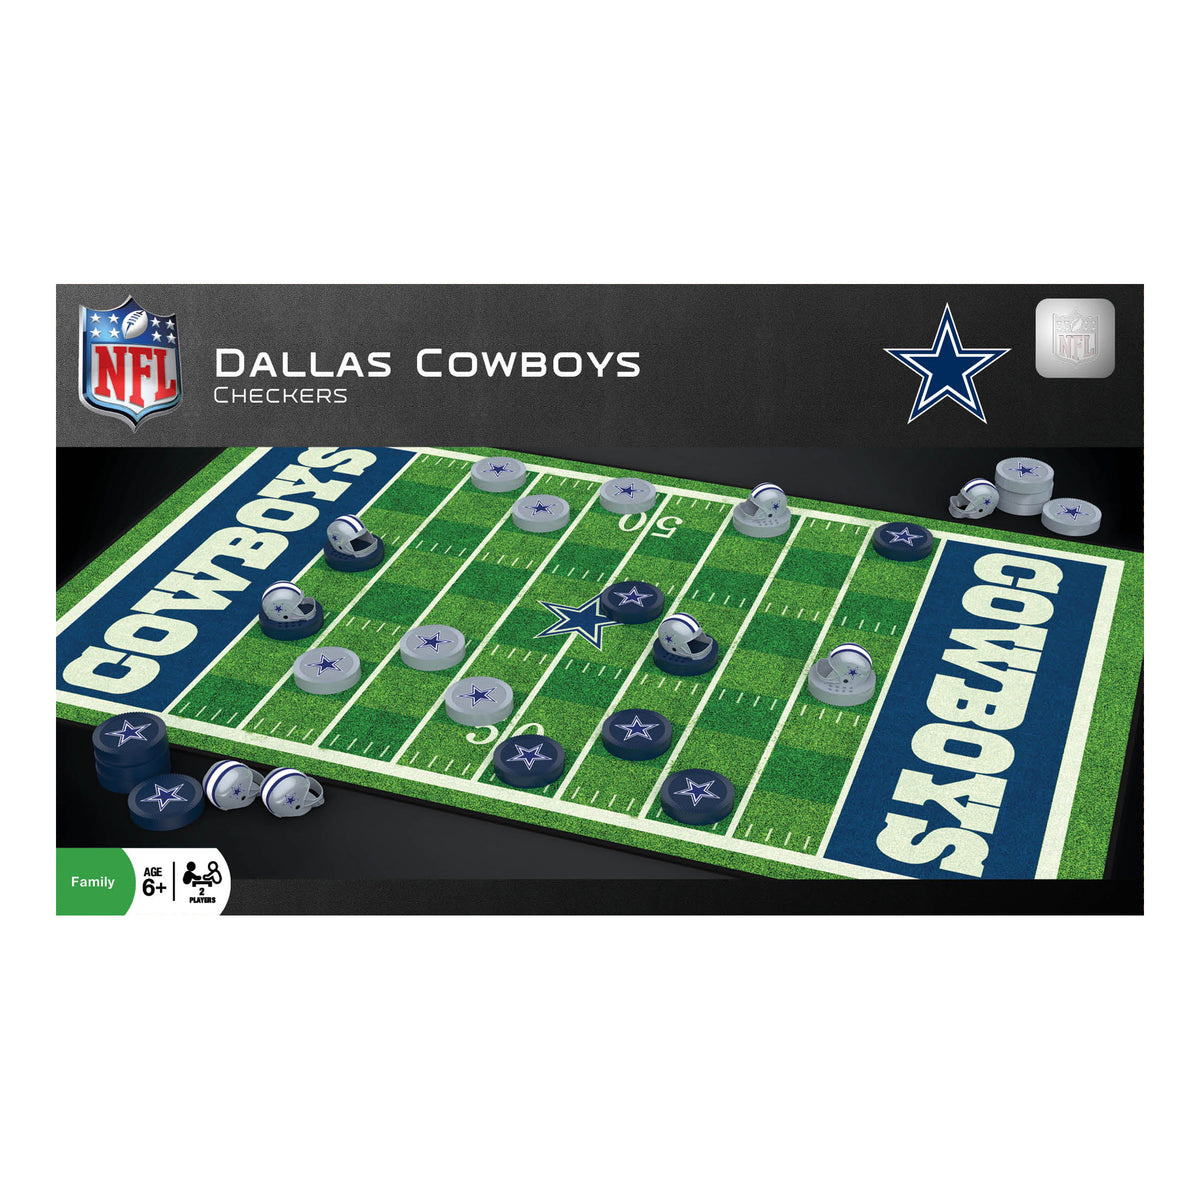 NFL Dallas Cowboys CHECKERS Game Americas Team Football FREE